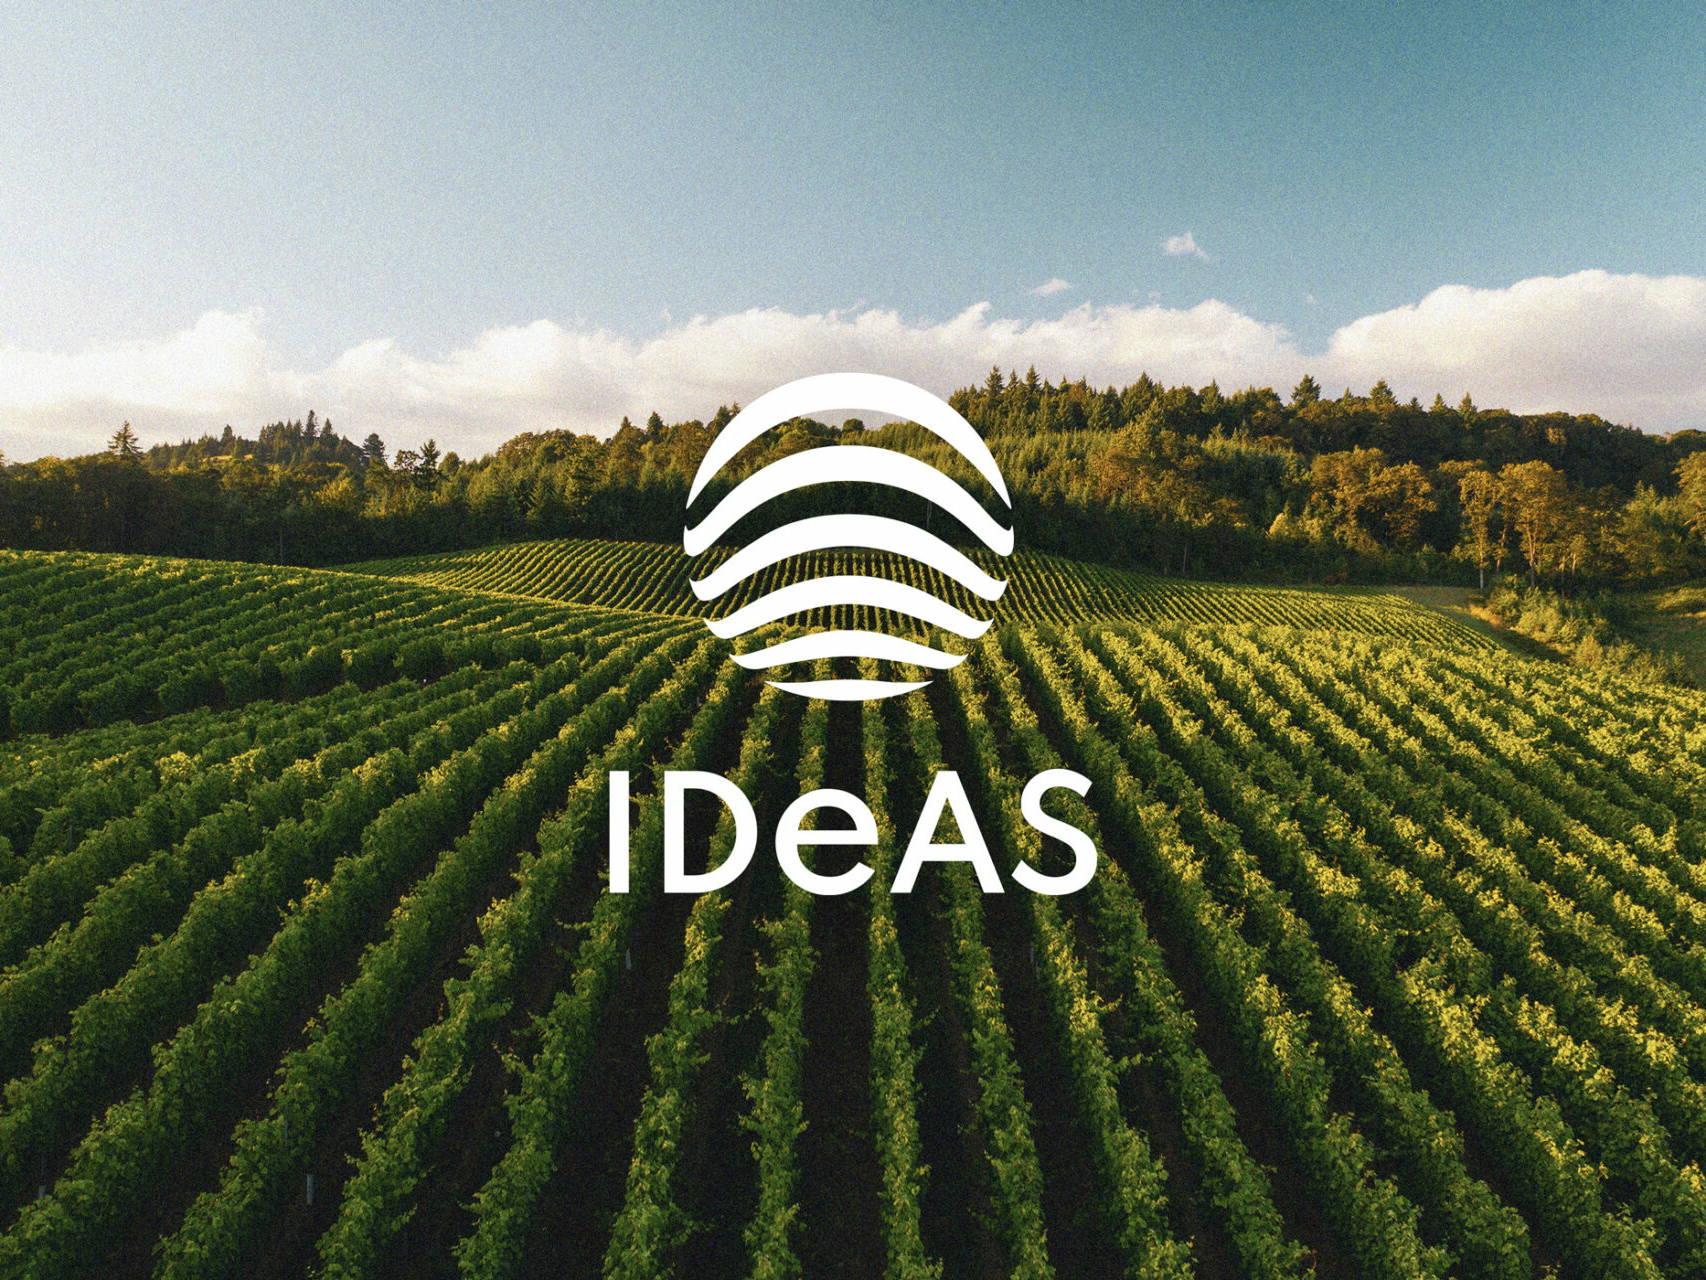 Das IDeAS Markenzeichen in weiß mit Weinbergen im Hintergrund.